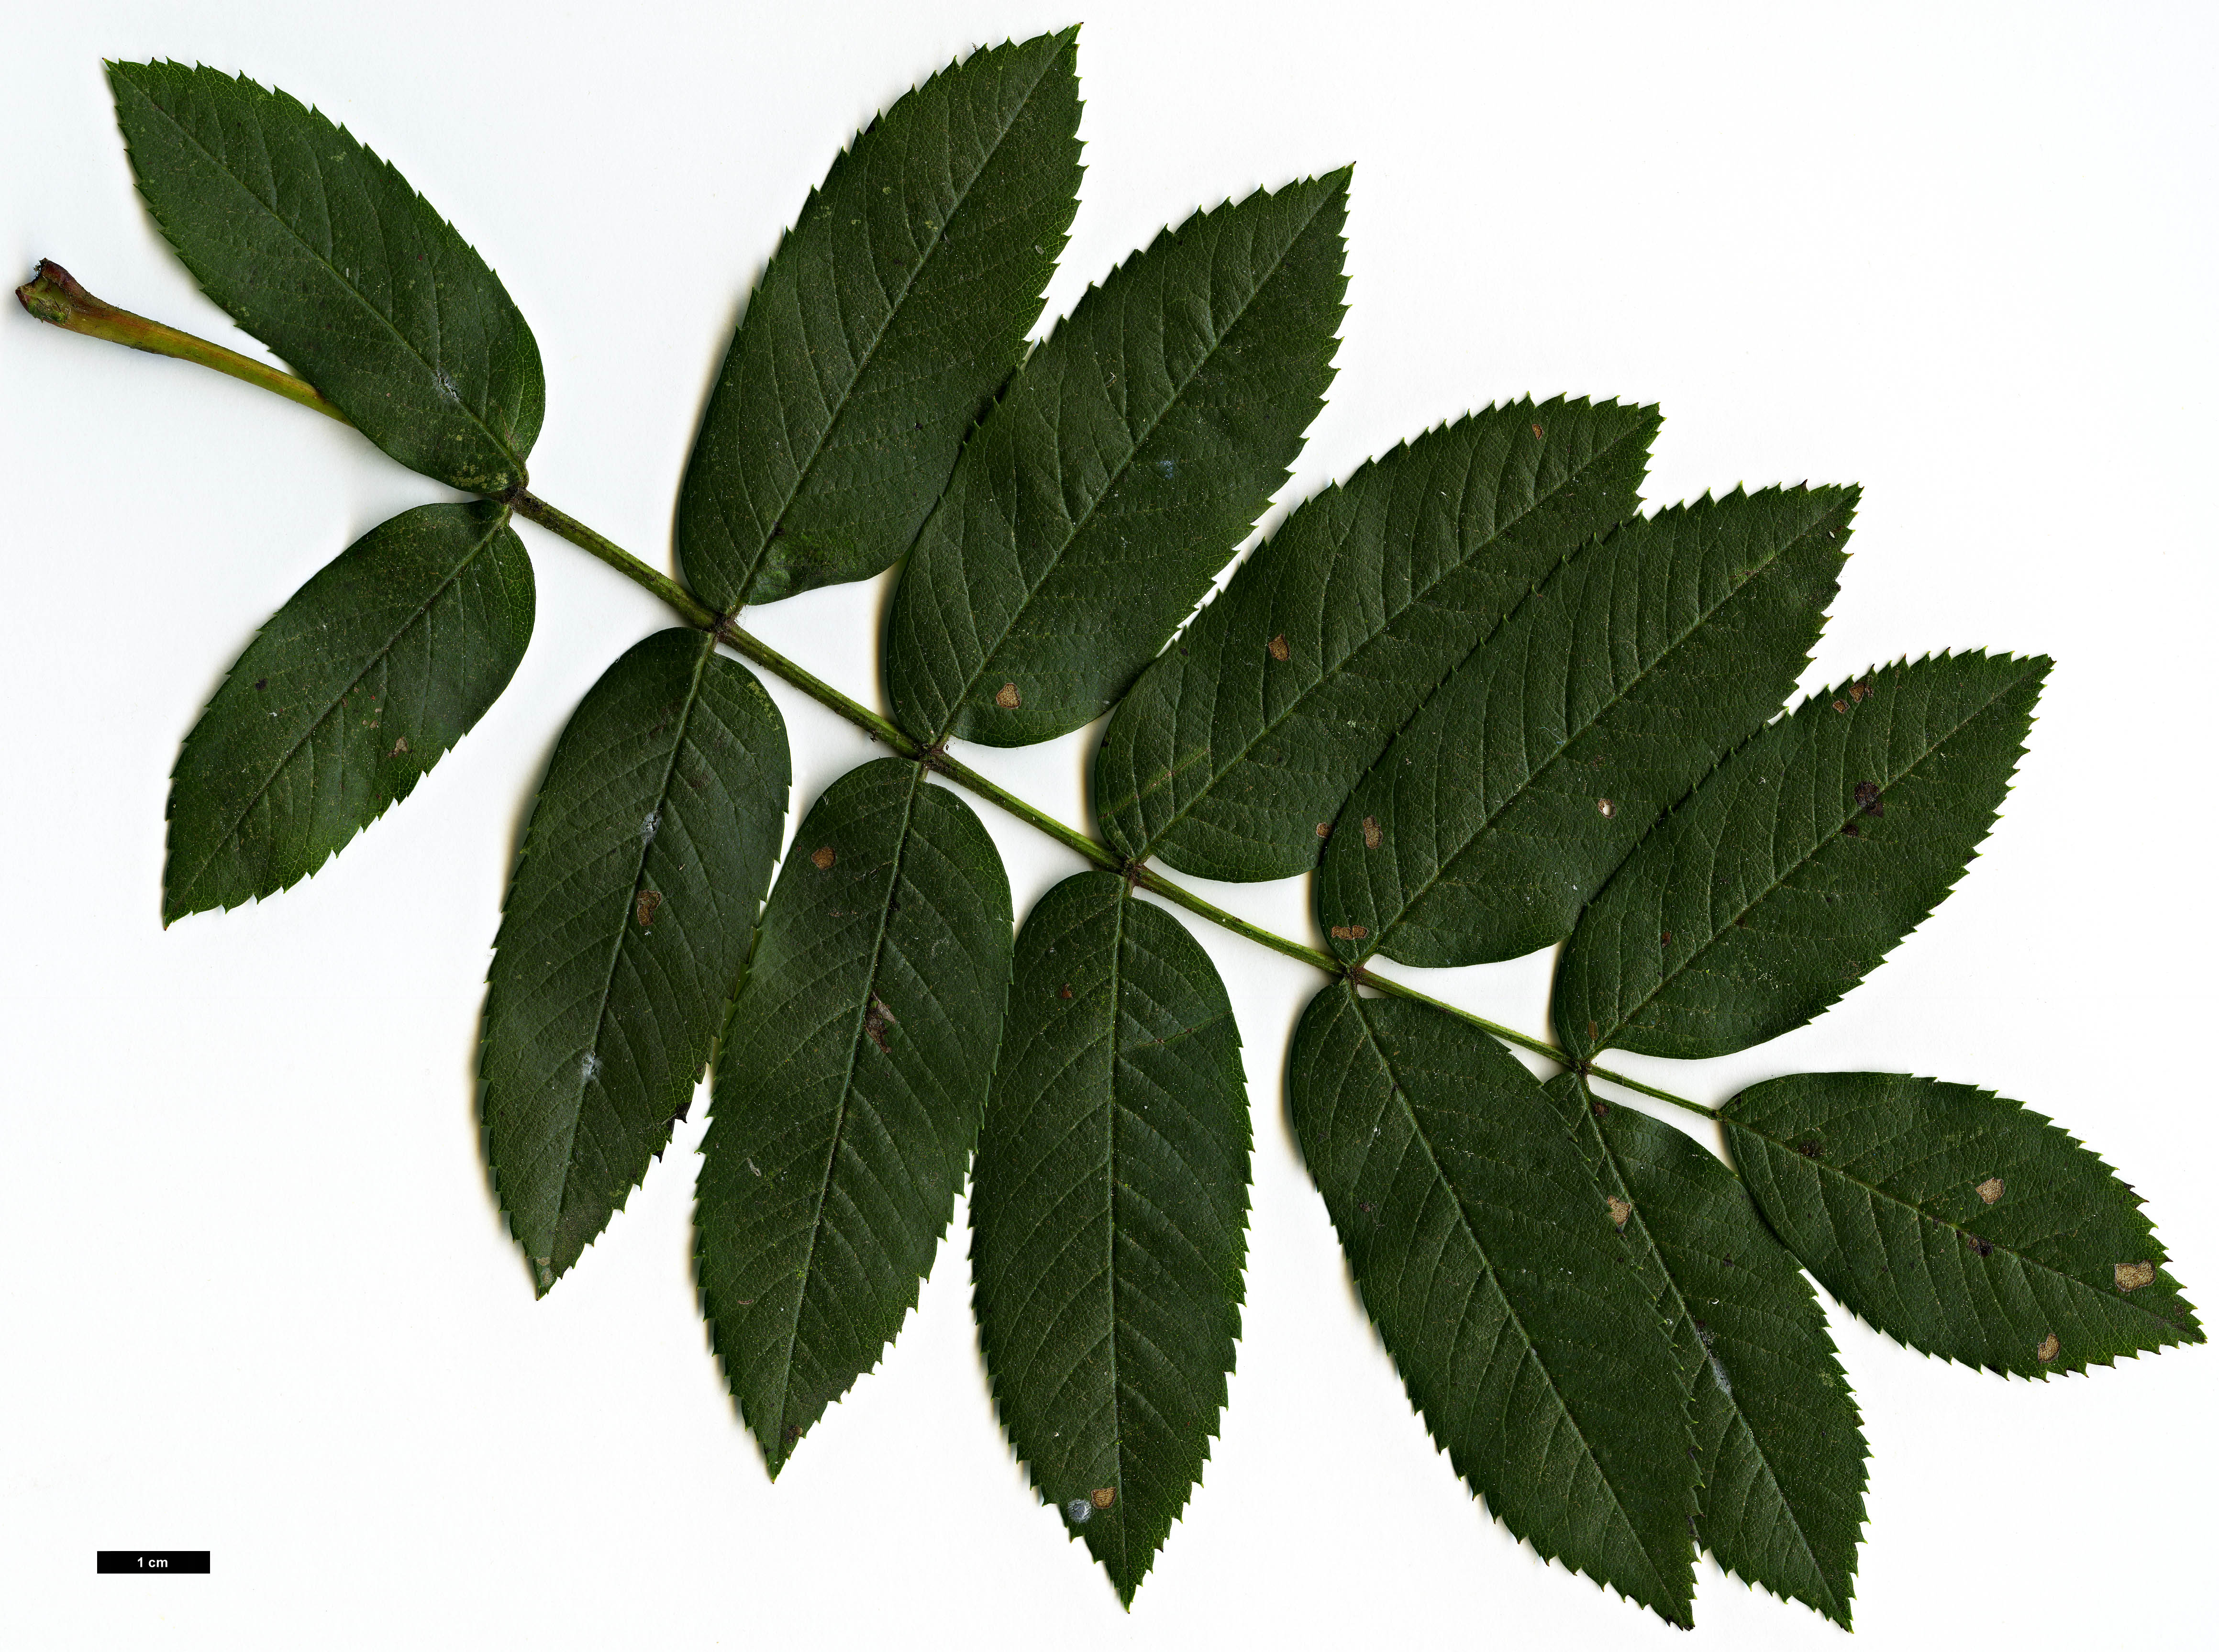 High resolution image: Family: Rosaceae - Genus: Sorbus - Taxon: aucuparia - SpeciesSub: subsp. pohuashanensis